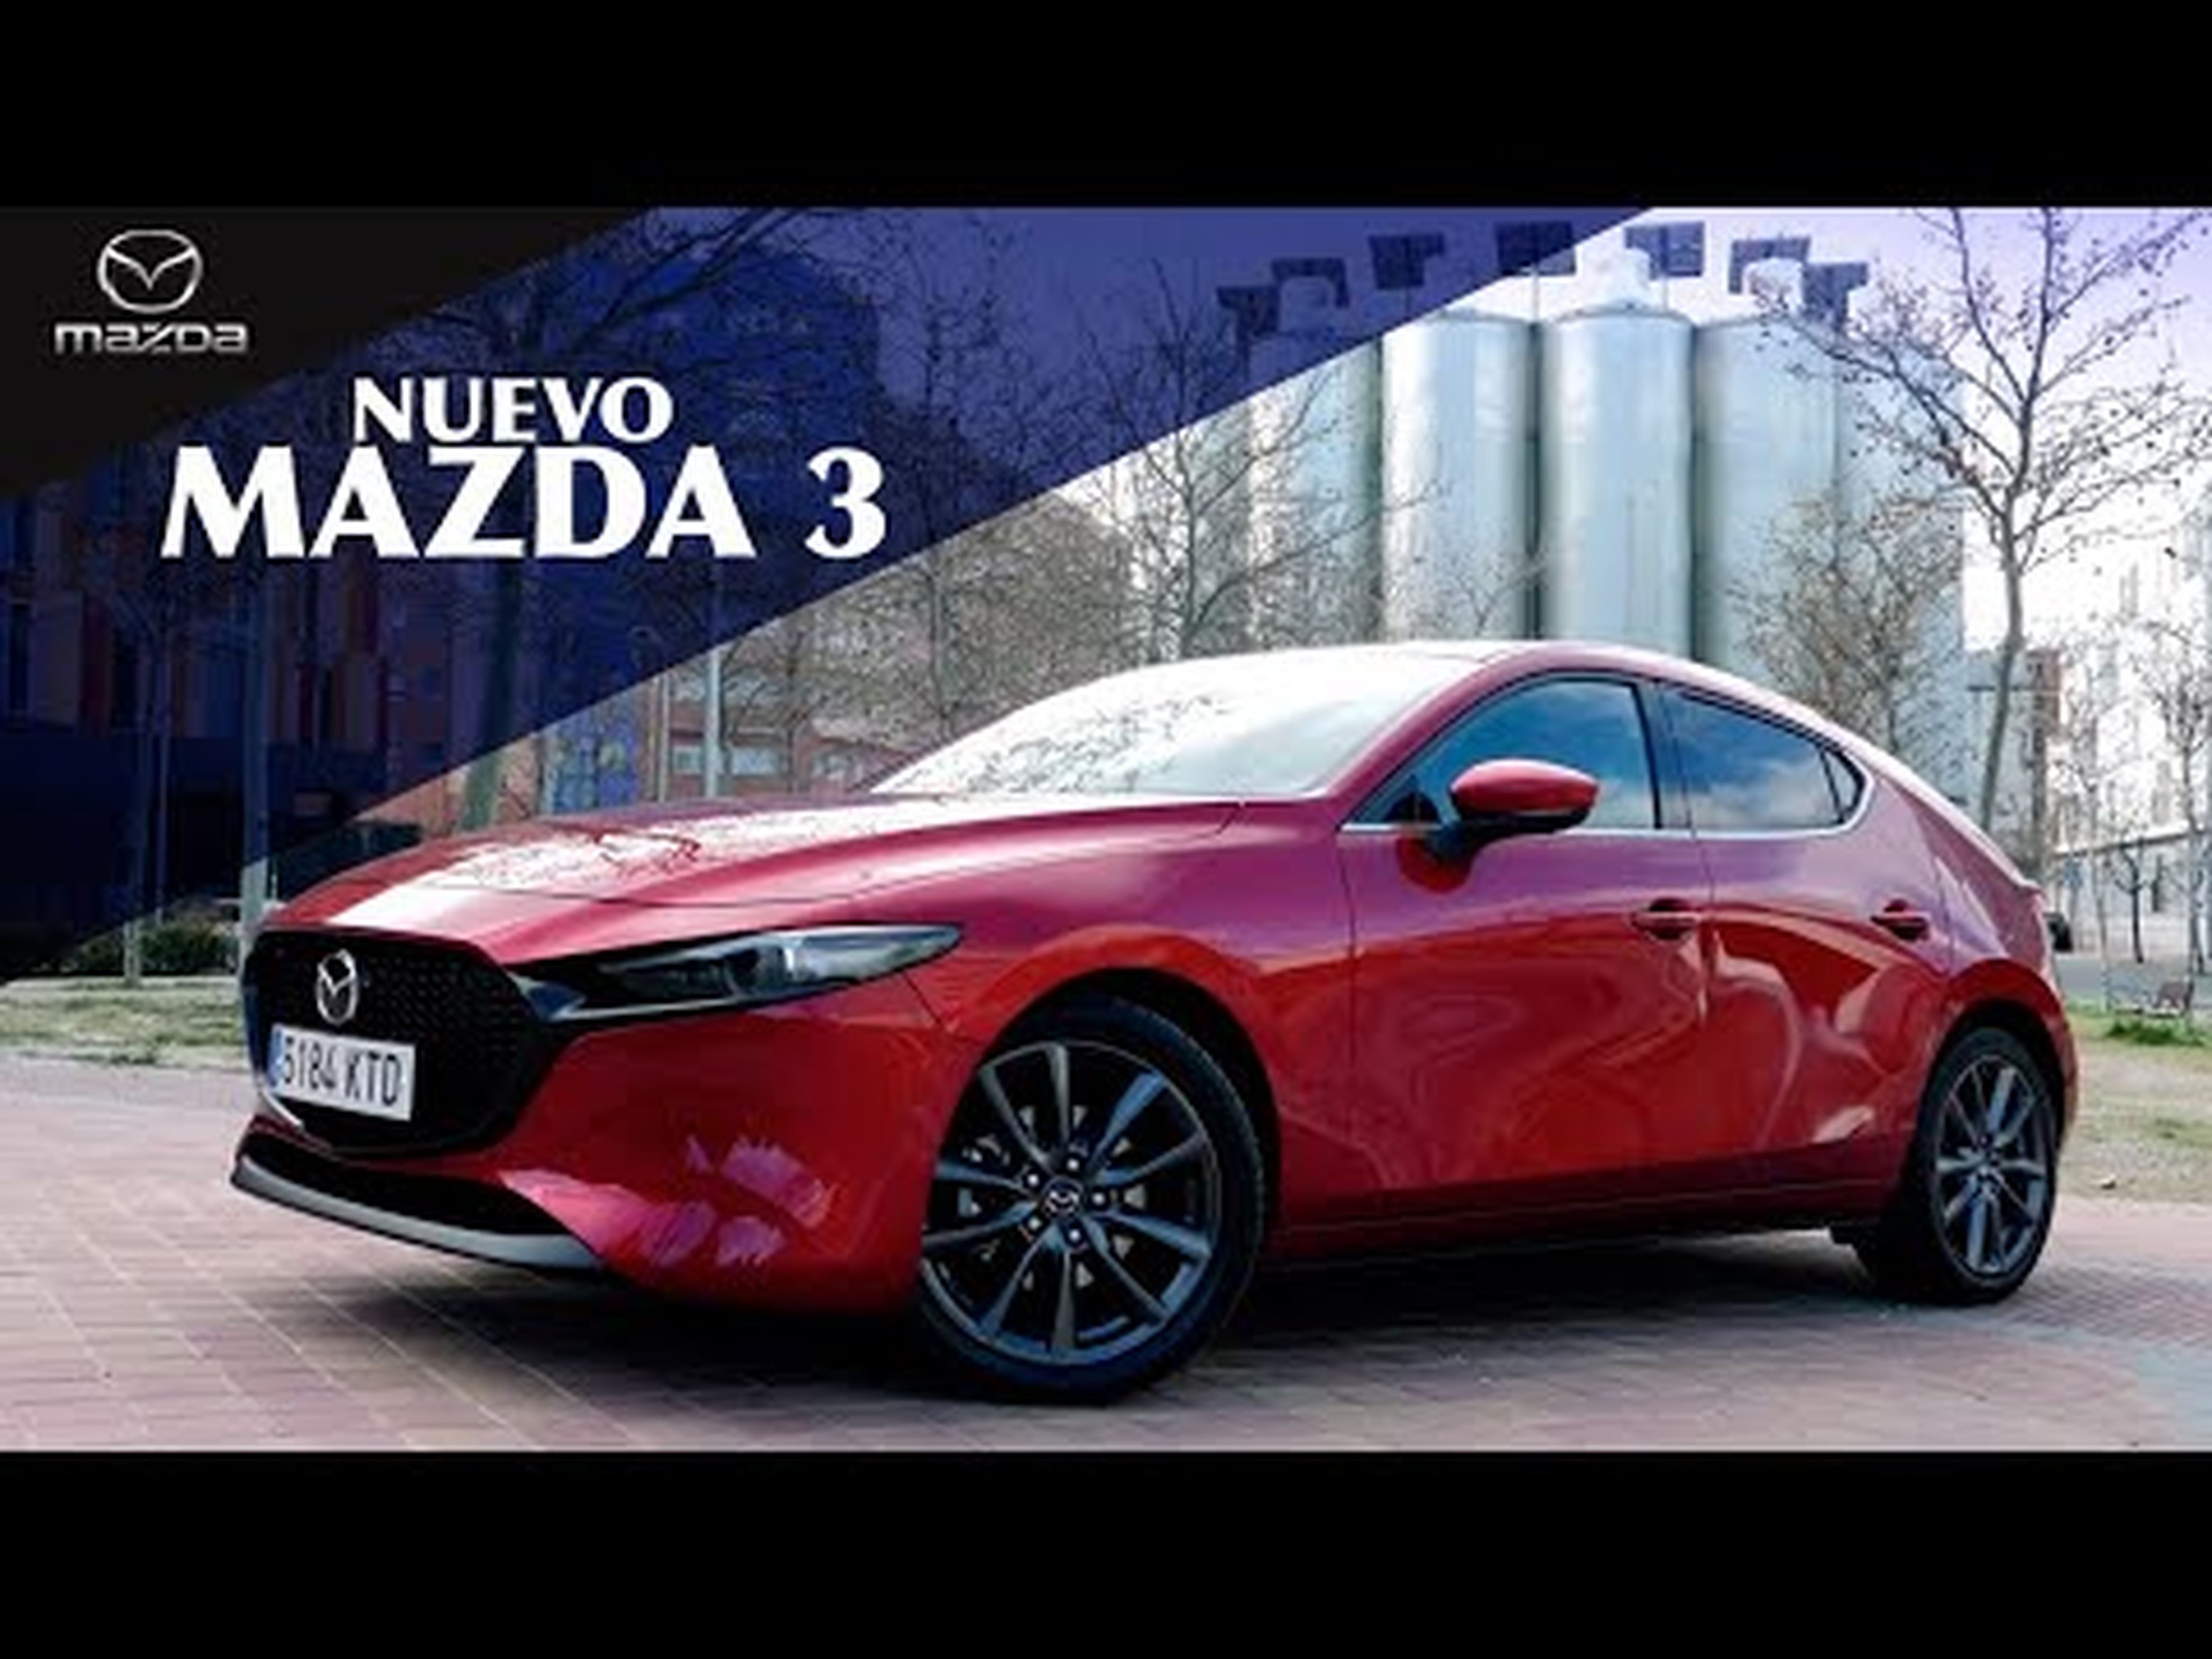 Nuevo Mazda 3, asalto al segmento premium